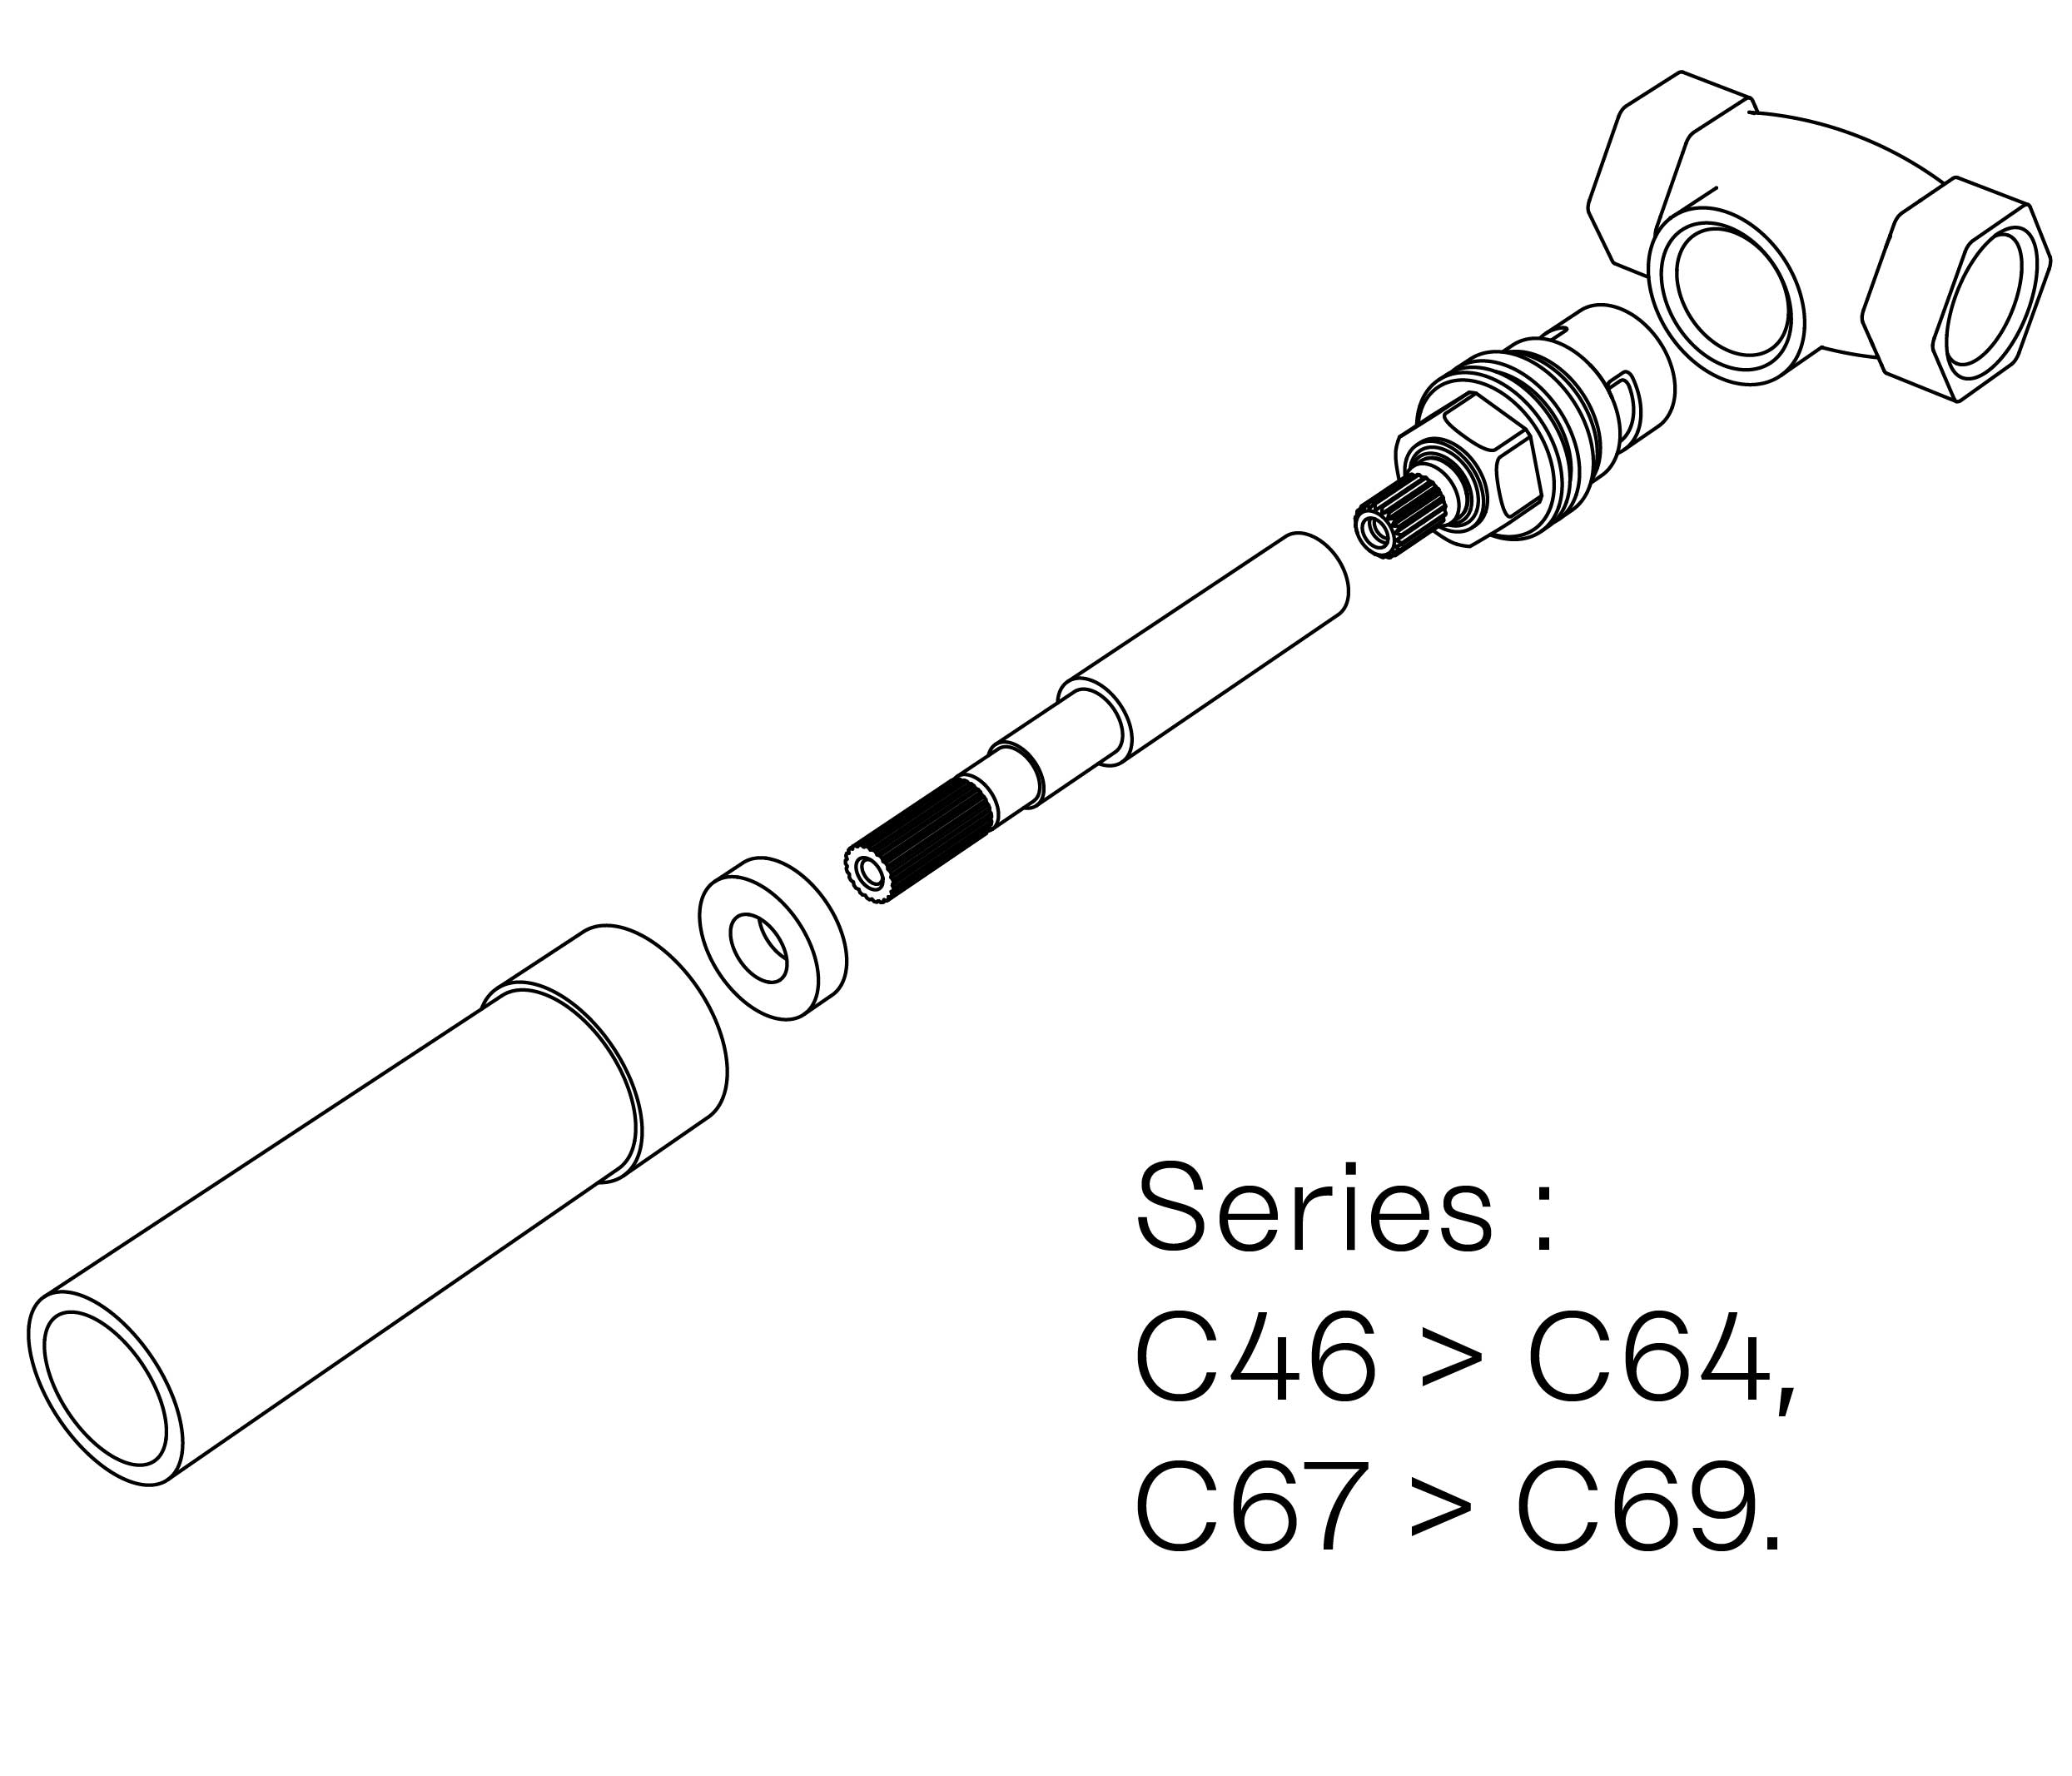 C00-22K29C Kit #2 for W-M valve 3/4″, 1/4 turn, Right